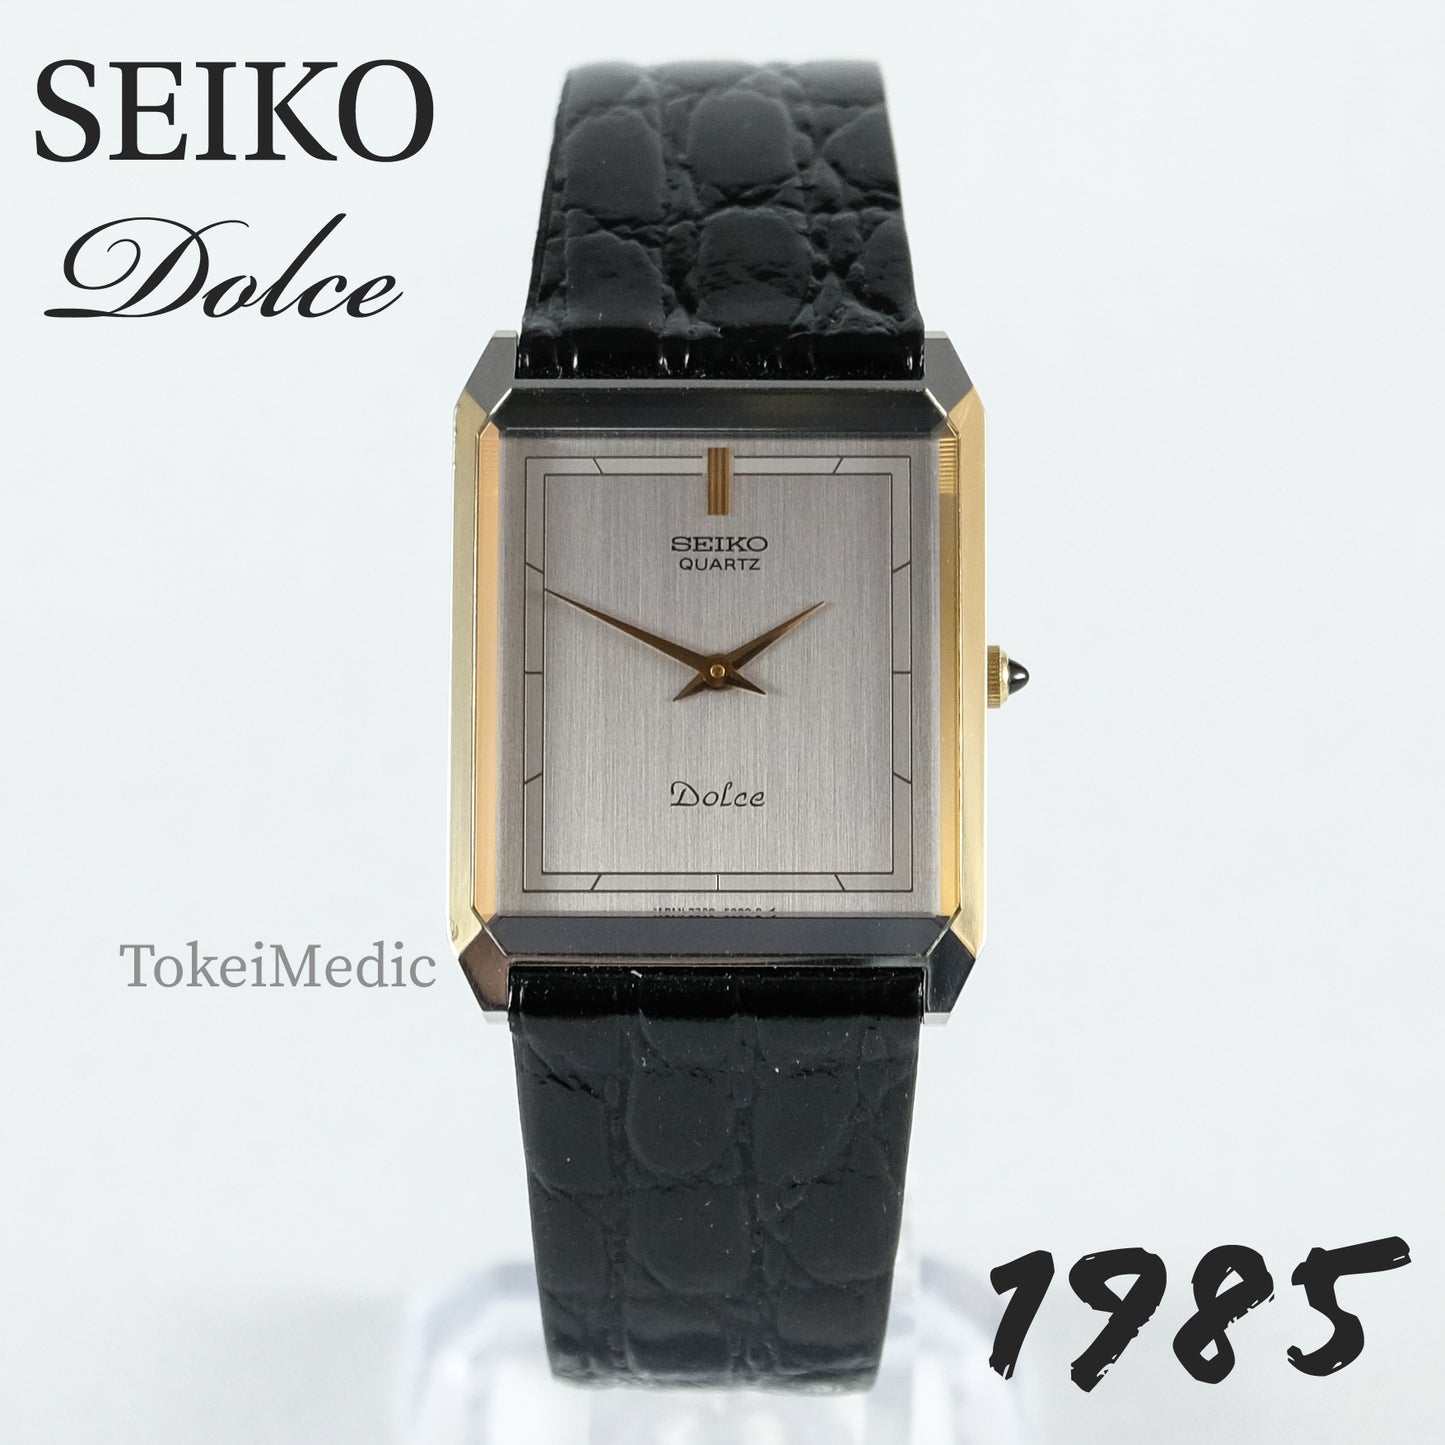 1985 Seiko Dolce 7730-5030